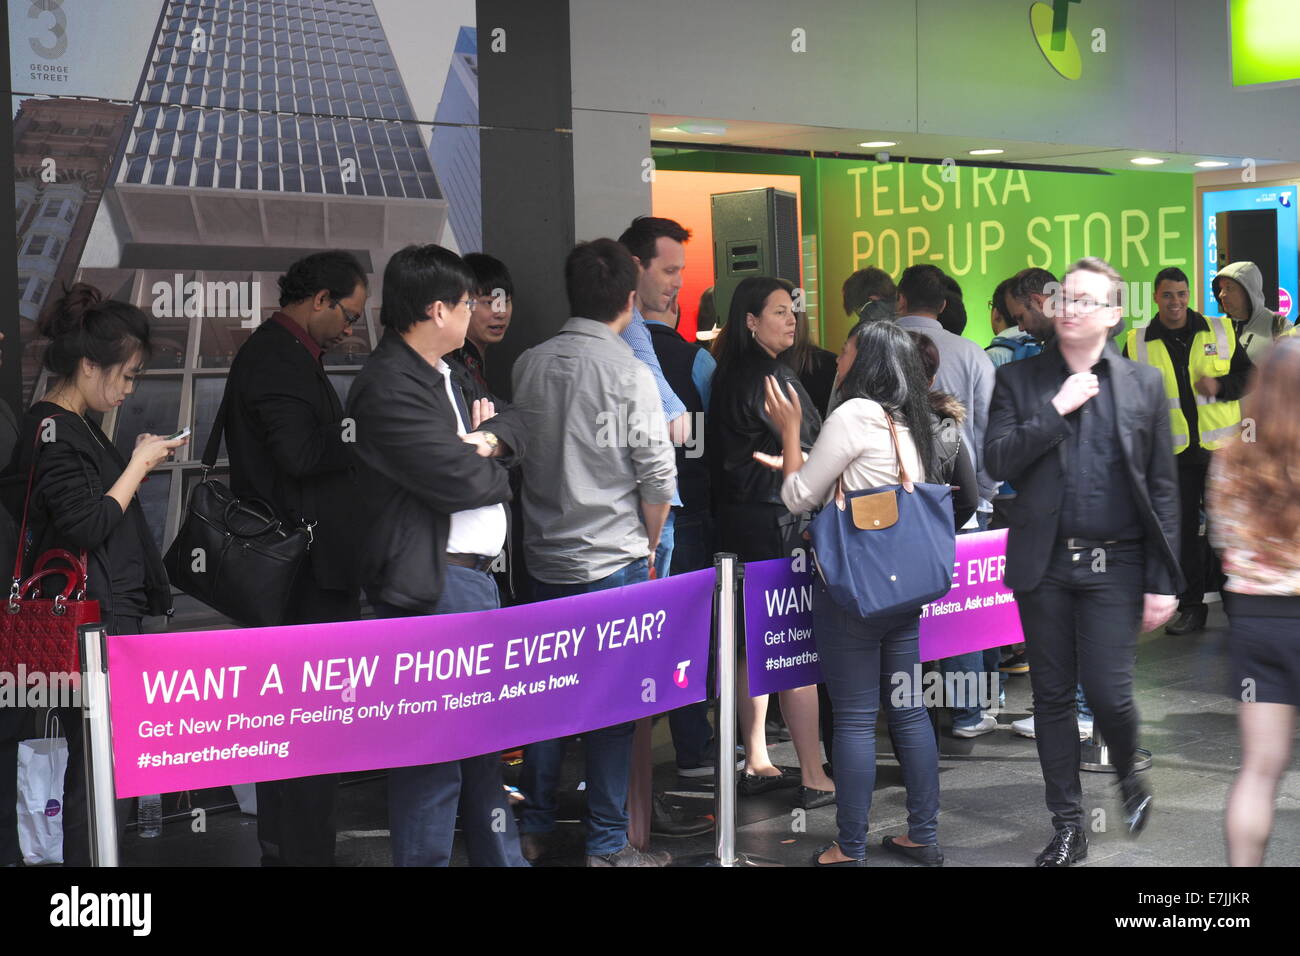 George Street, Sydney. 19. September 2014. Kunden Schlange an einem Telstra pop-up Store in Sydneys George Street, das Iphone 6 und 6 plus zu kaufen. Bildnachweis: Martin Beere/Alamy Live News Stockfoto